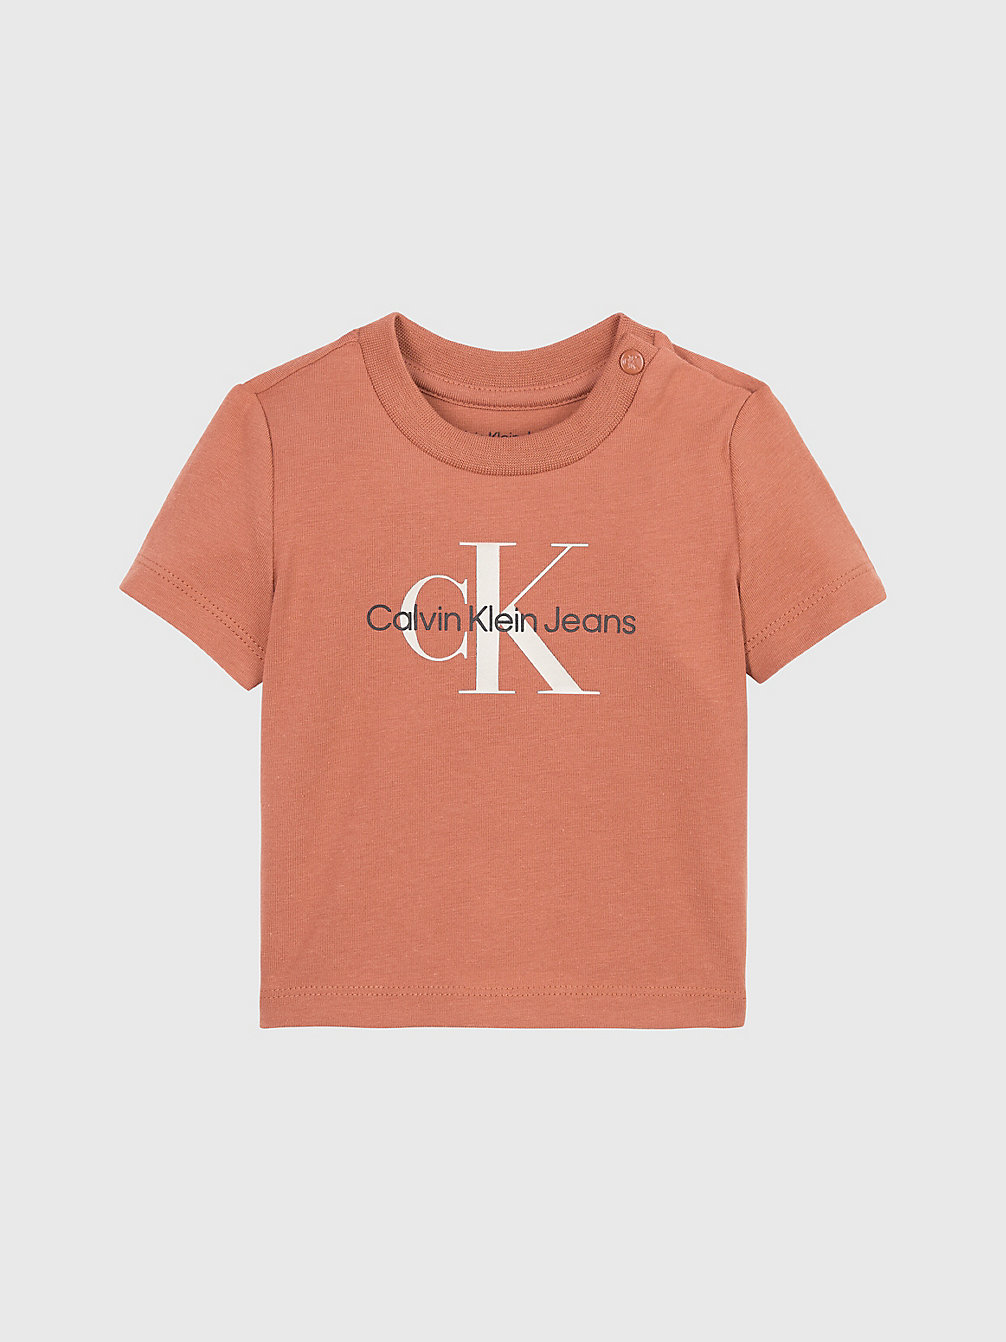 AUBURN > T-Shirt Z Logo Newborn > undefined newborn - Calvin Klein